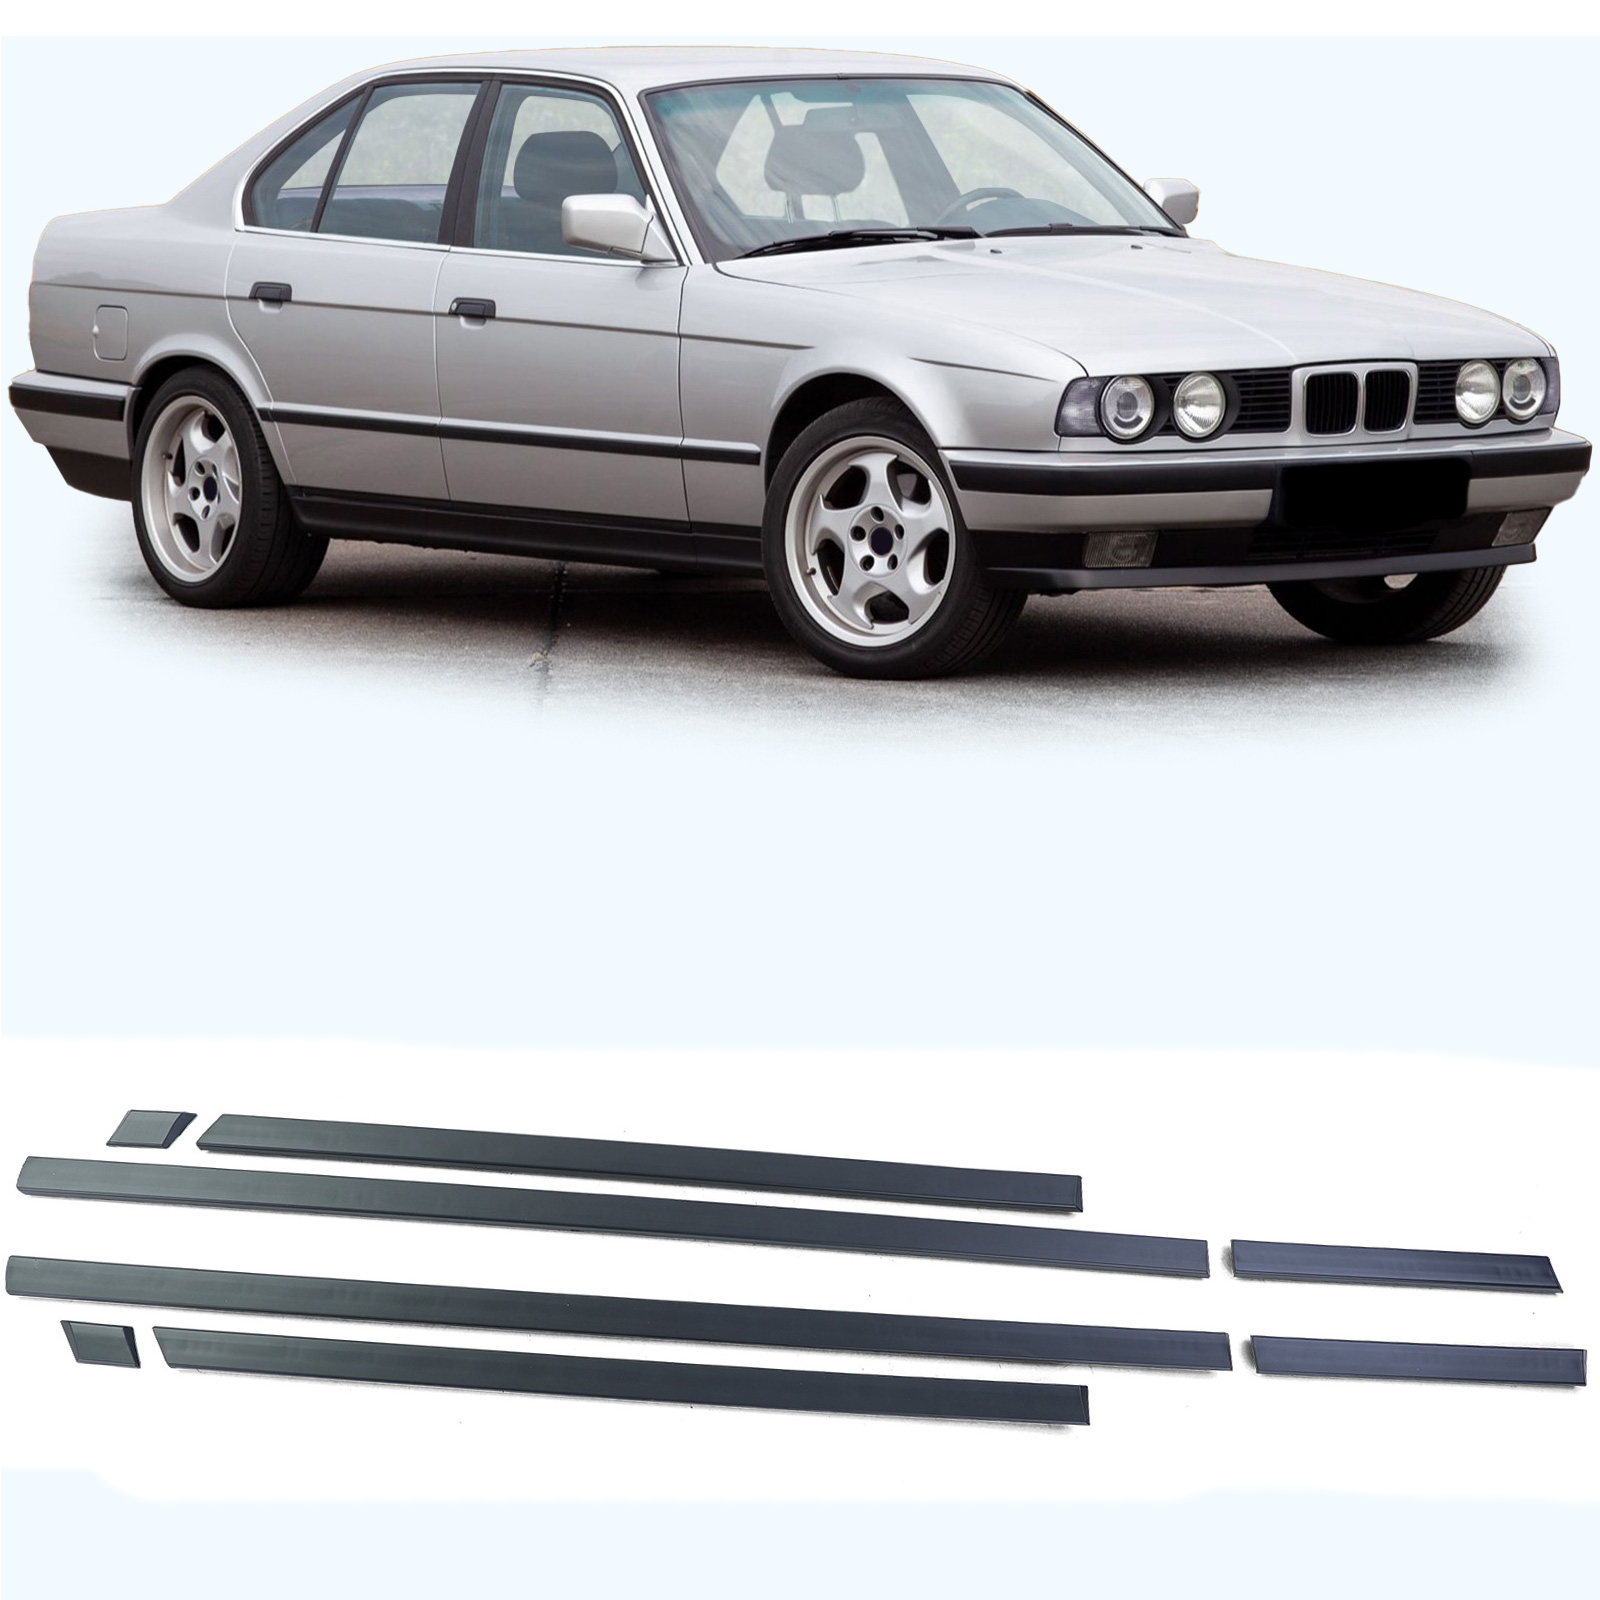 Türleisten Stoßleisten Zierleisten Set 8 teilig passend für BMW 5er E34  88-96 kaufen